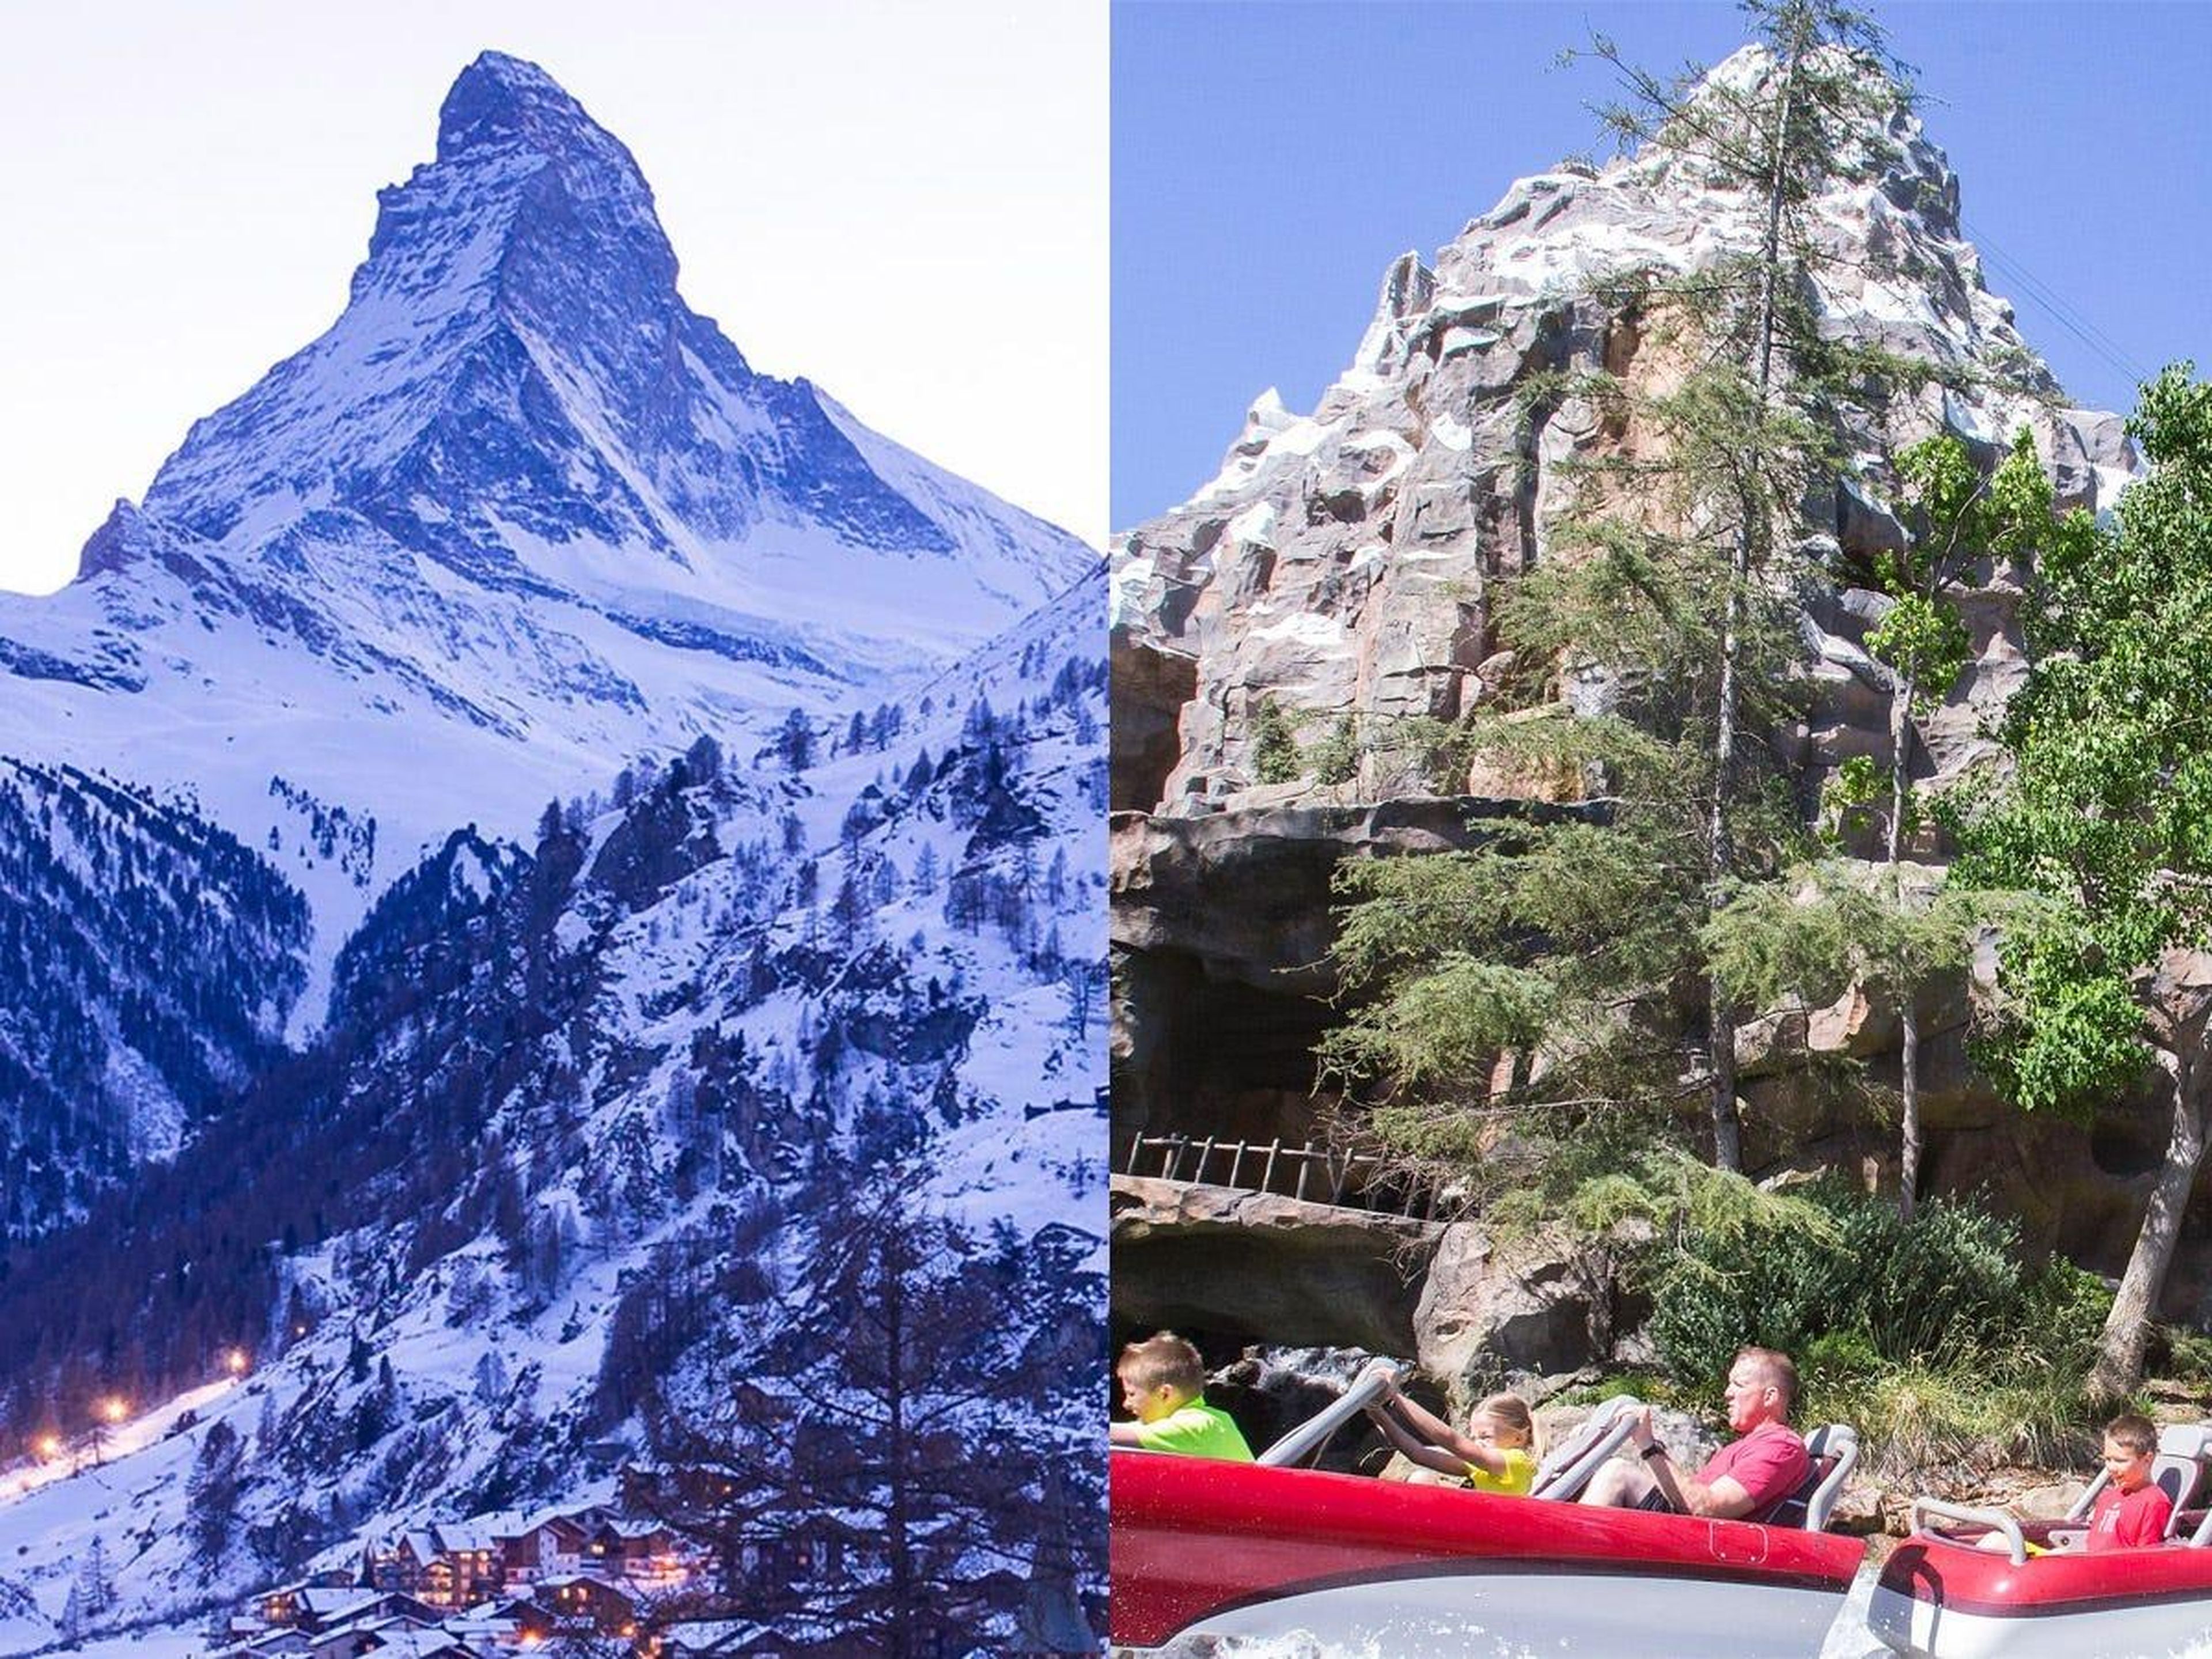 El monte Cervino en Zermatt, Suiza (izquierda) y la atracción 'Matterhorn' en Disneyland, California (derecha).